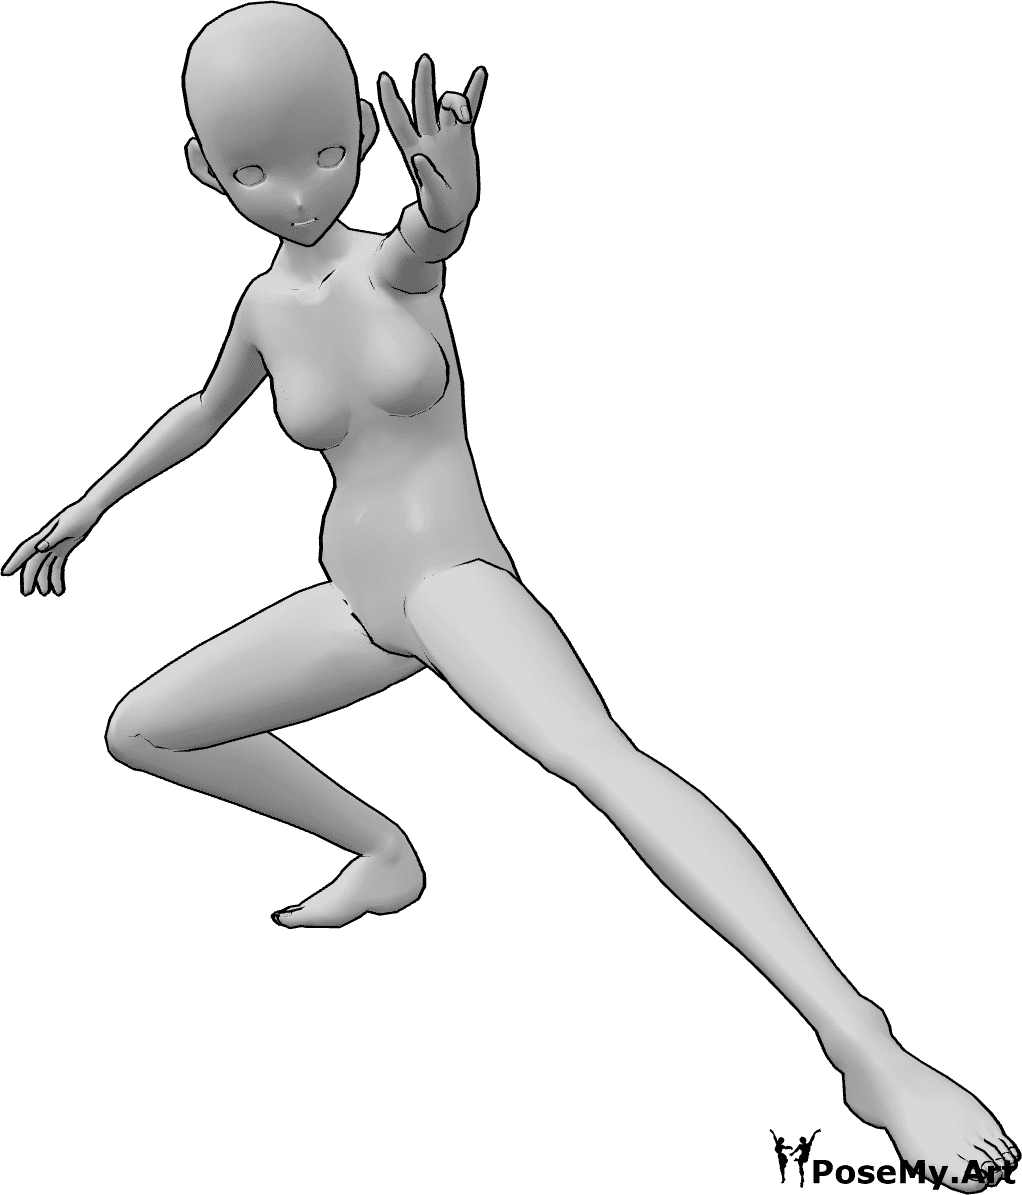 Référence des poses- Pose de lanceur de sorts Anime - Une femme animée est accroupie et jette un sort avec sa main gauche.